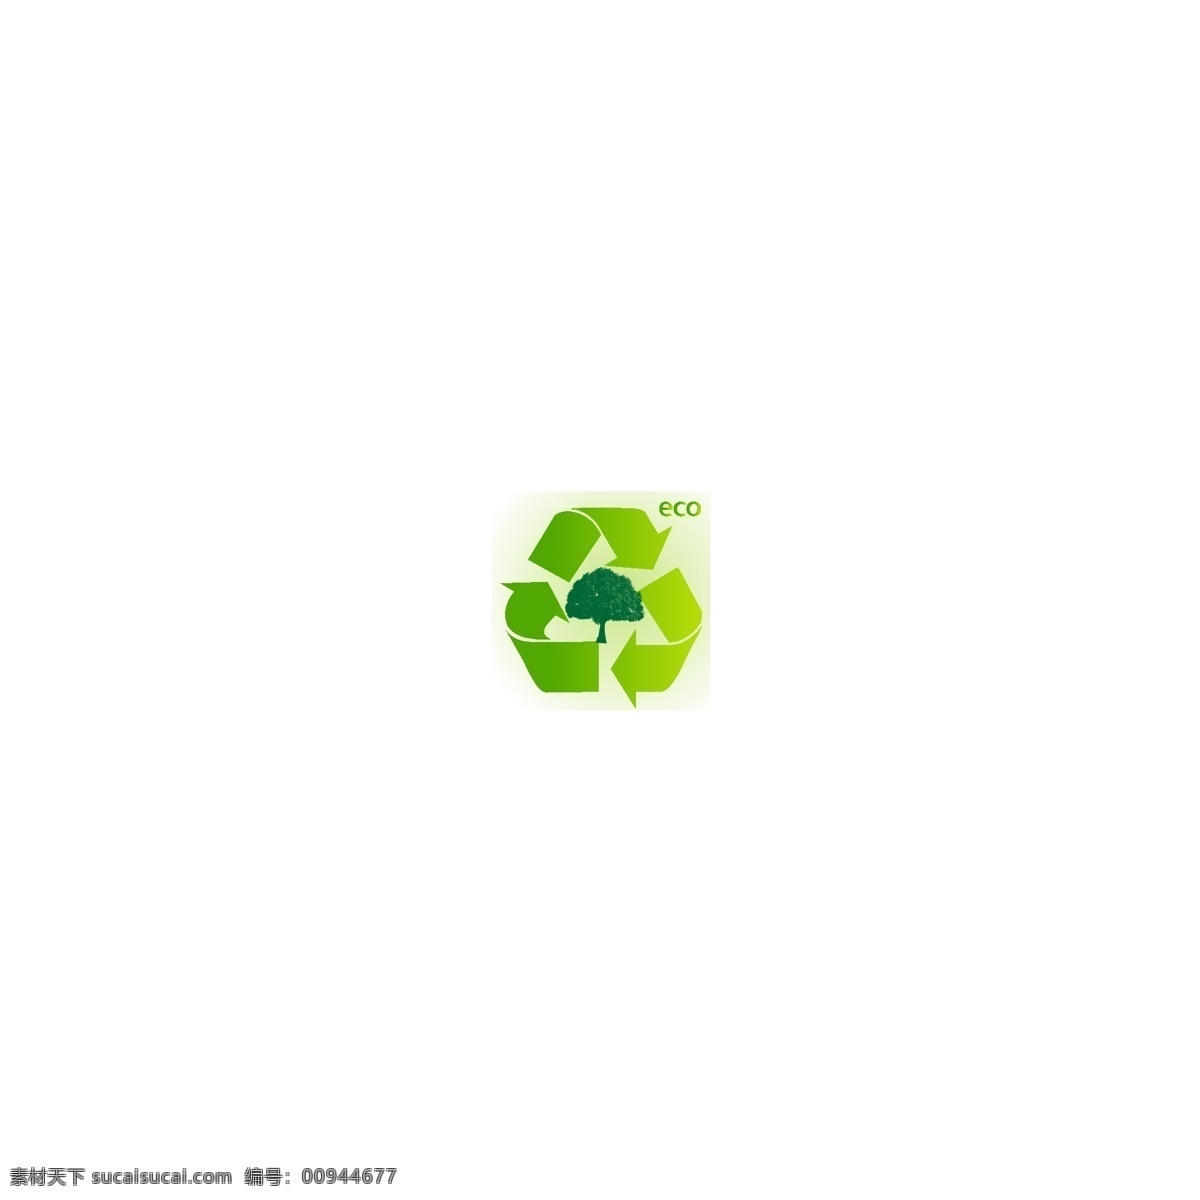 绿色环保 矢量 绿色 环保 创意 矢量素材 背景素材 设计素材